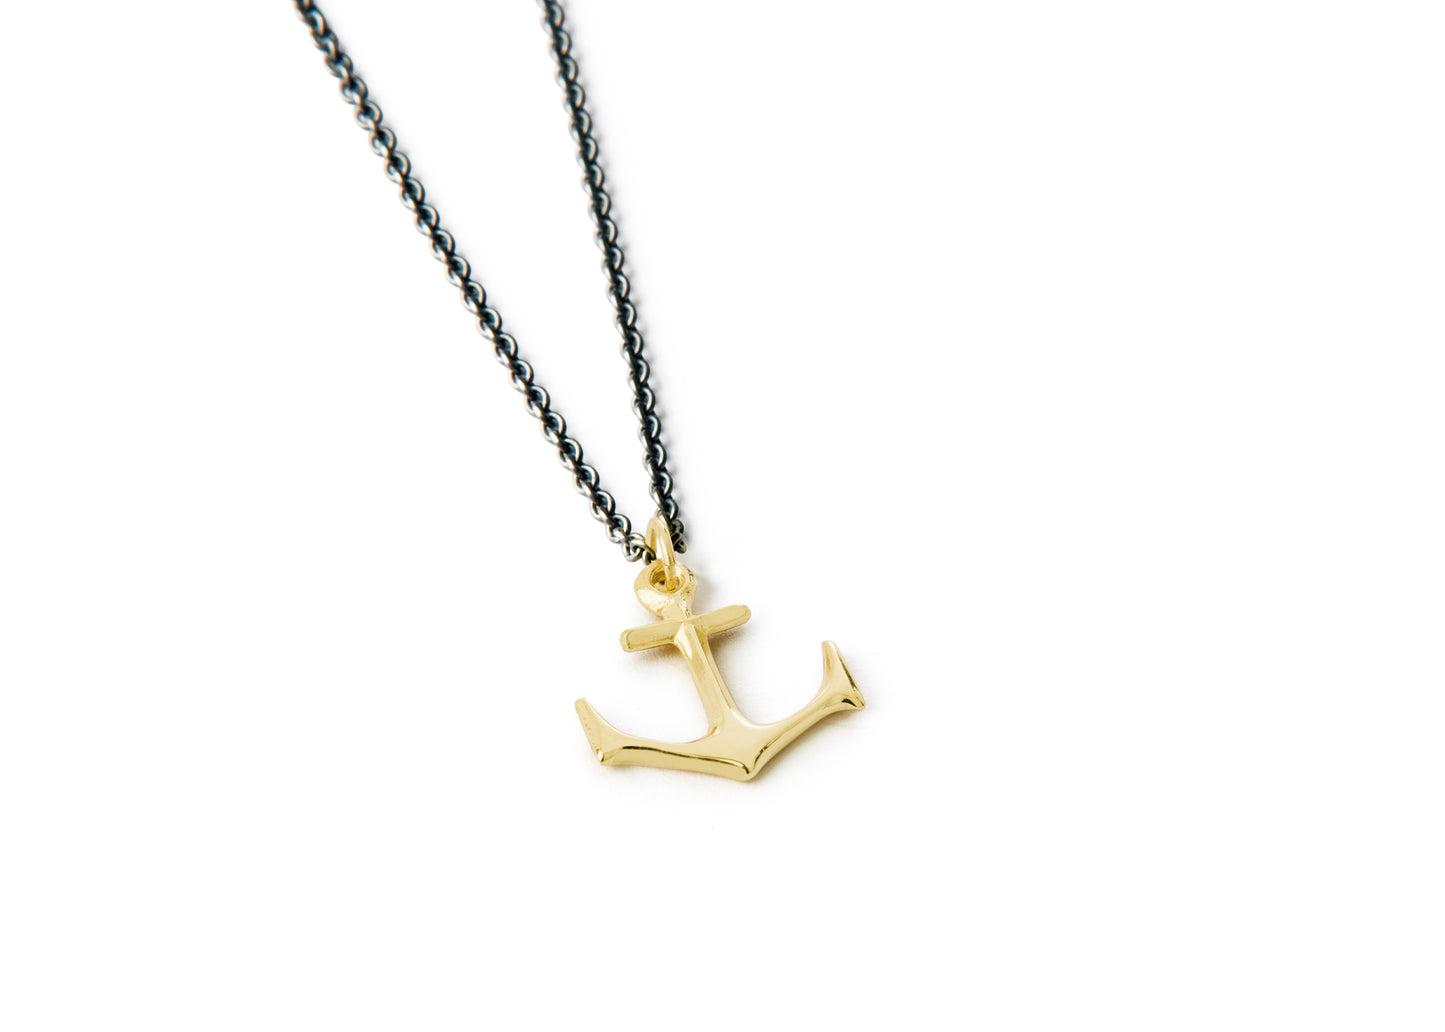 Anchor Necklace - Small gold anchor